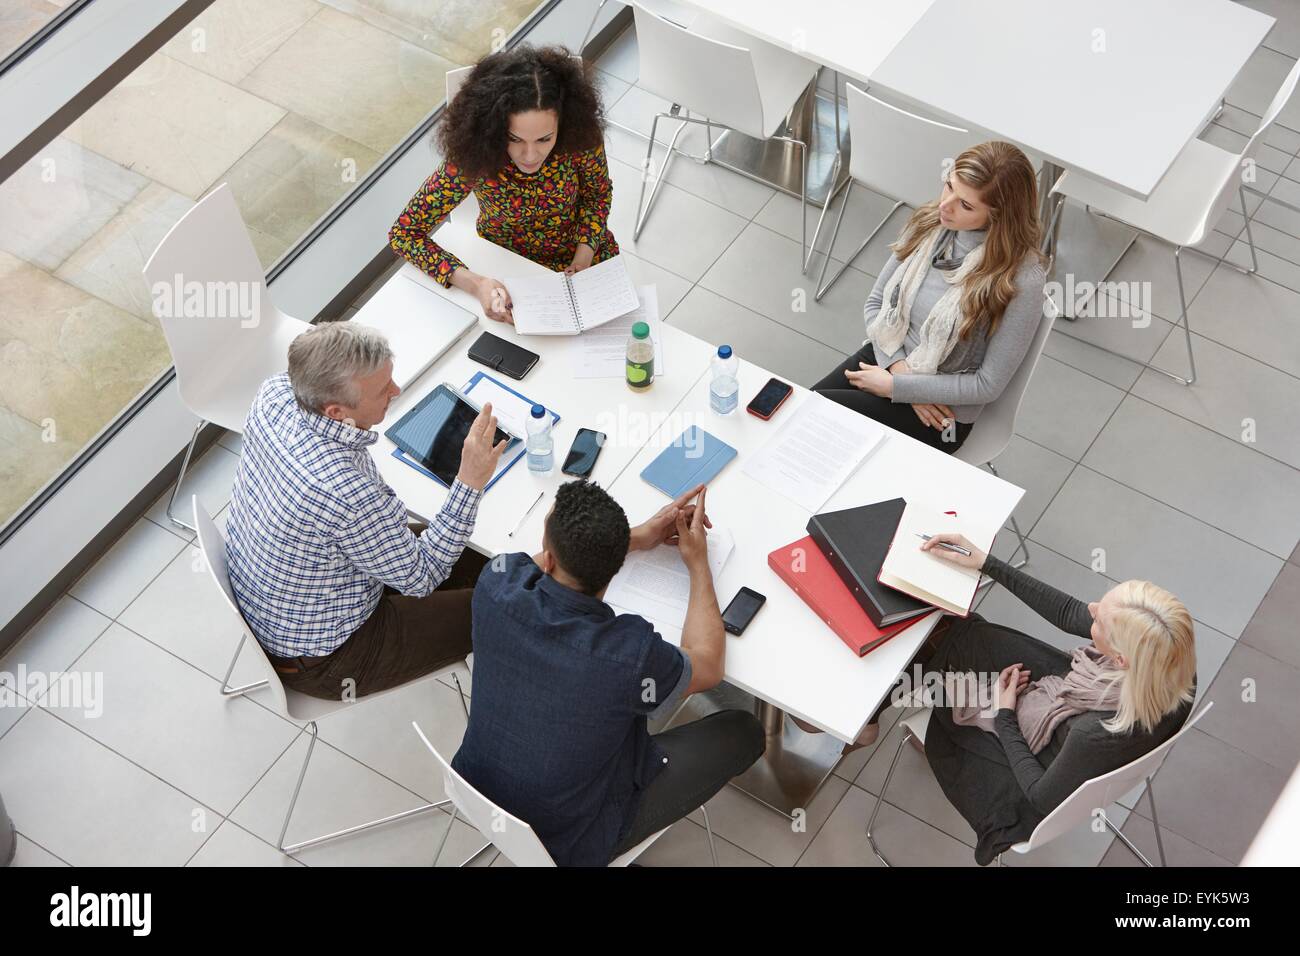 Vue de dessus de la réunion de l'équipe d'affaires at conference table Banque D'Images